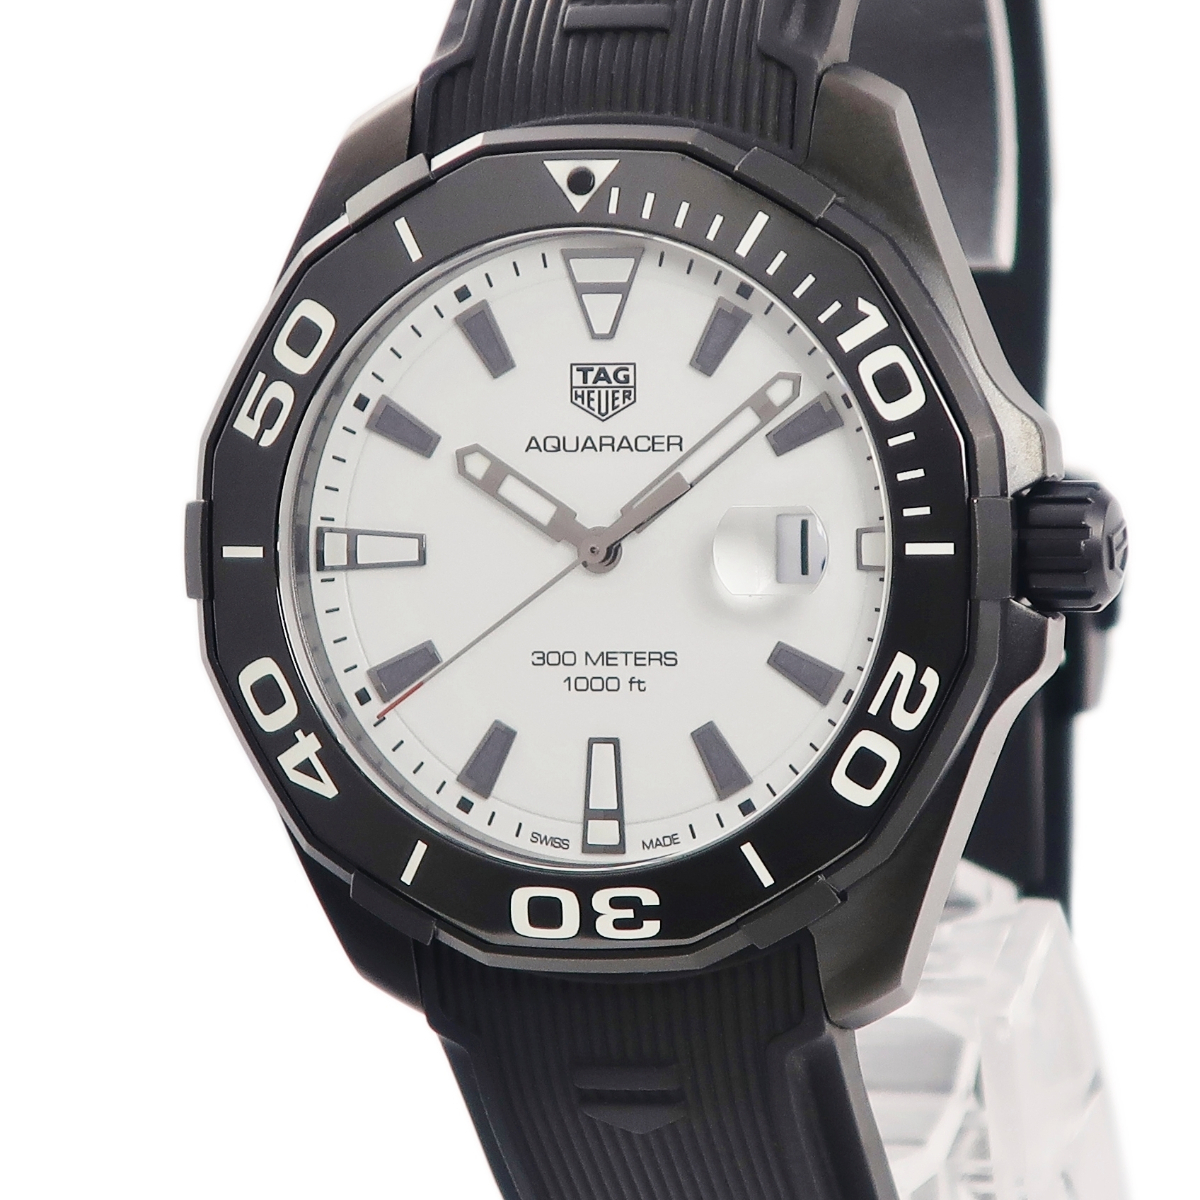 【3年保証】 タグホイヤー アクアレーサー ナイトダイバー WAY108A.FT6141 ブラックPVD 白 バー クオーツ メンズ 腕時計